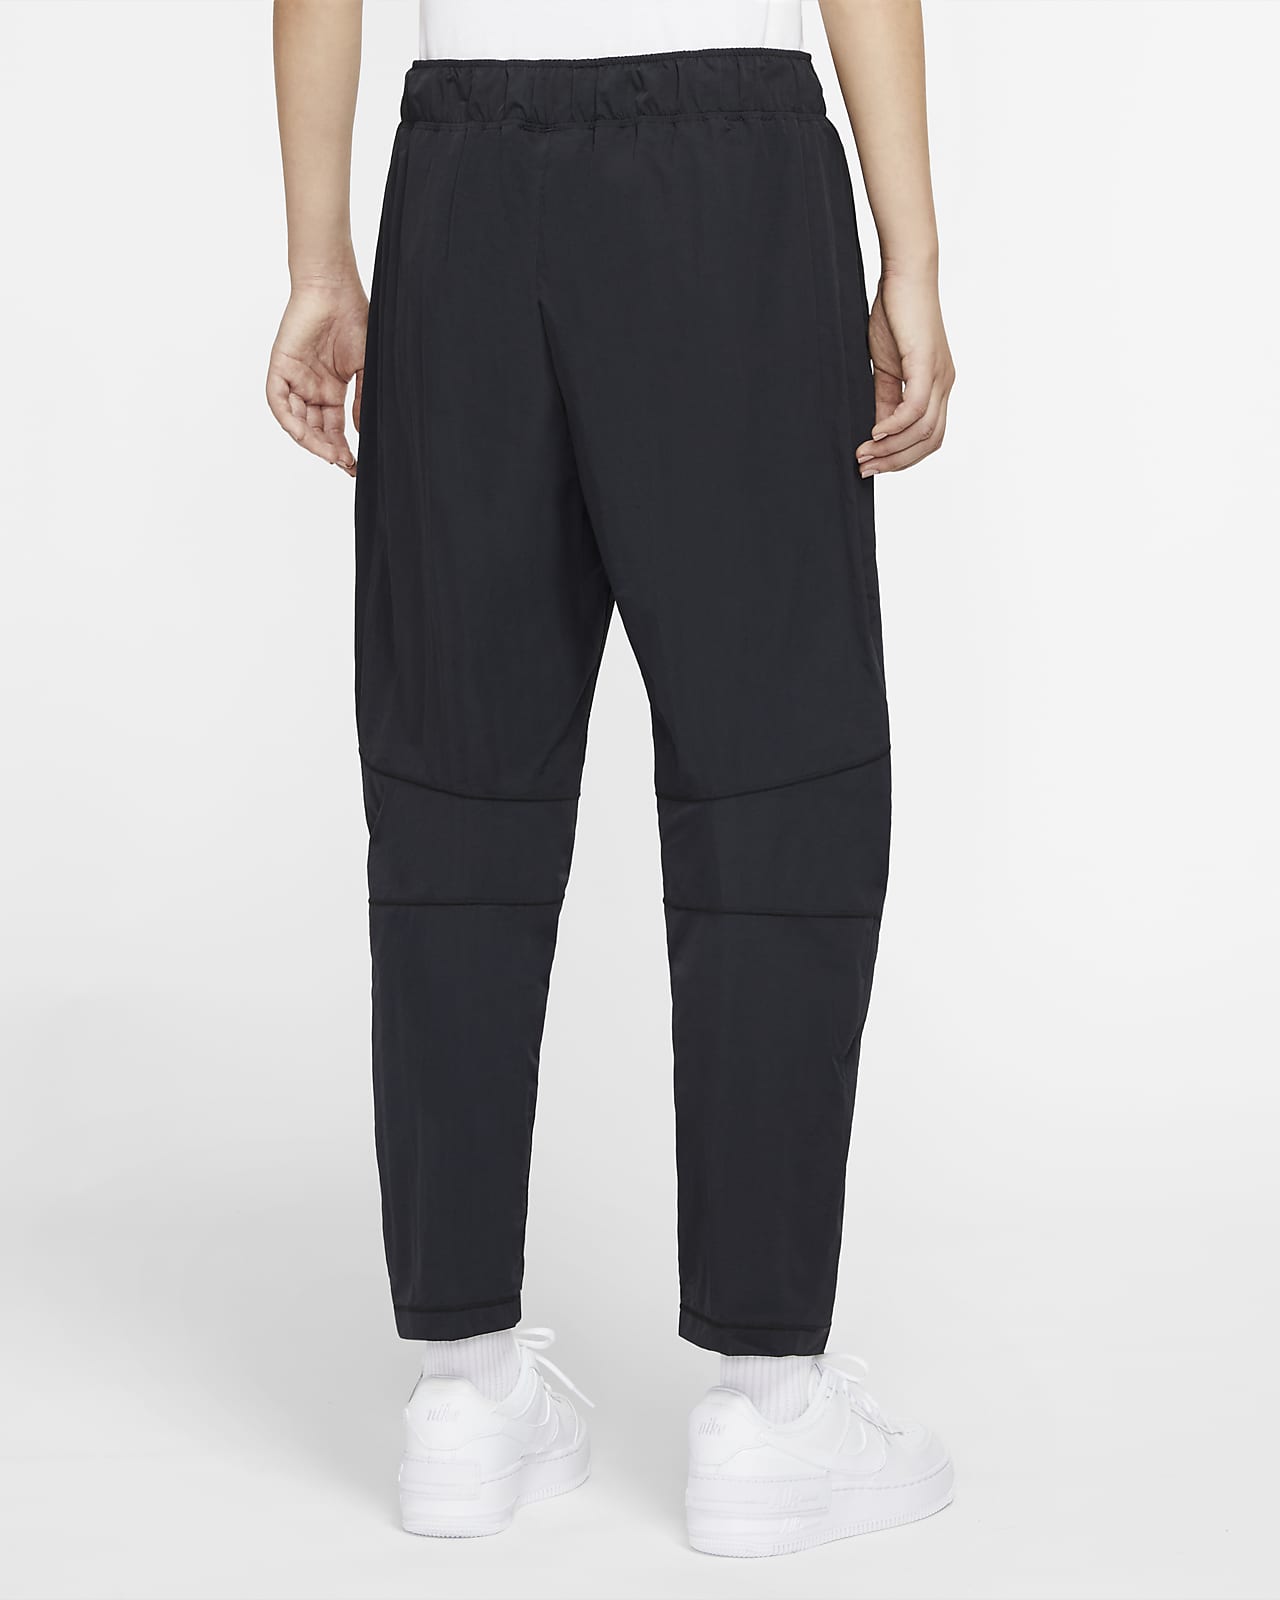 Pantalones tejidos para mujer Nike Sportswear Tech Pack. Nike.com